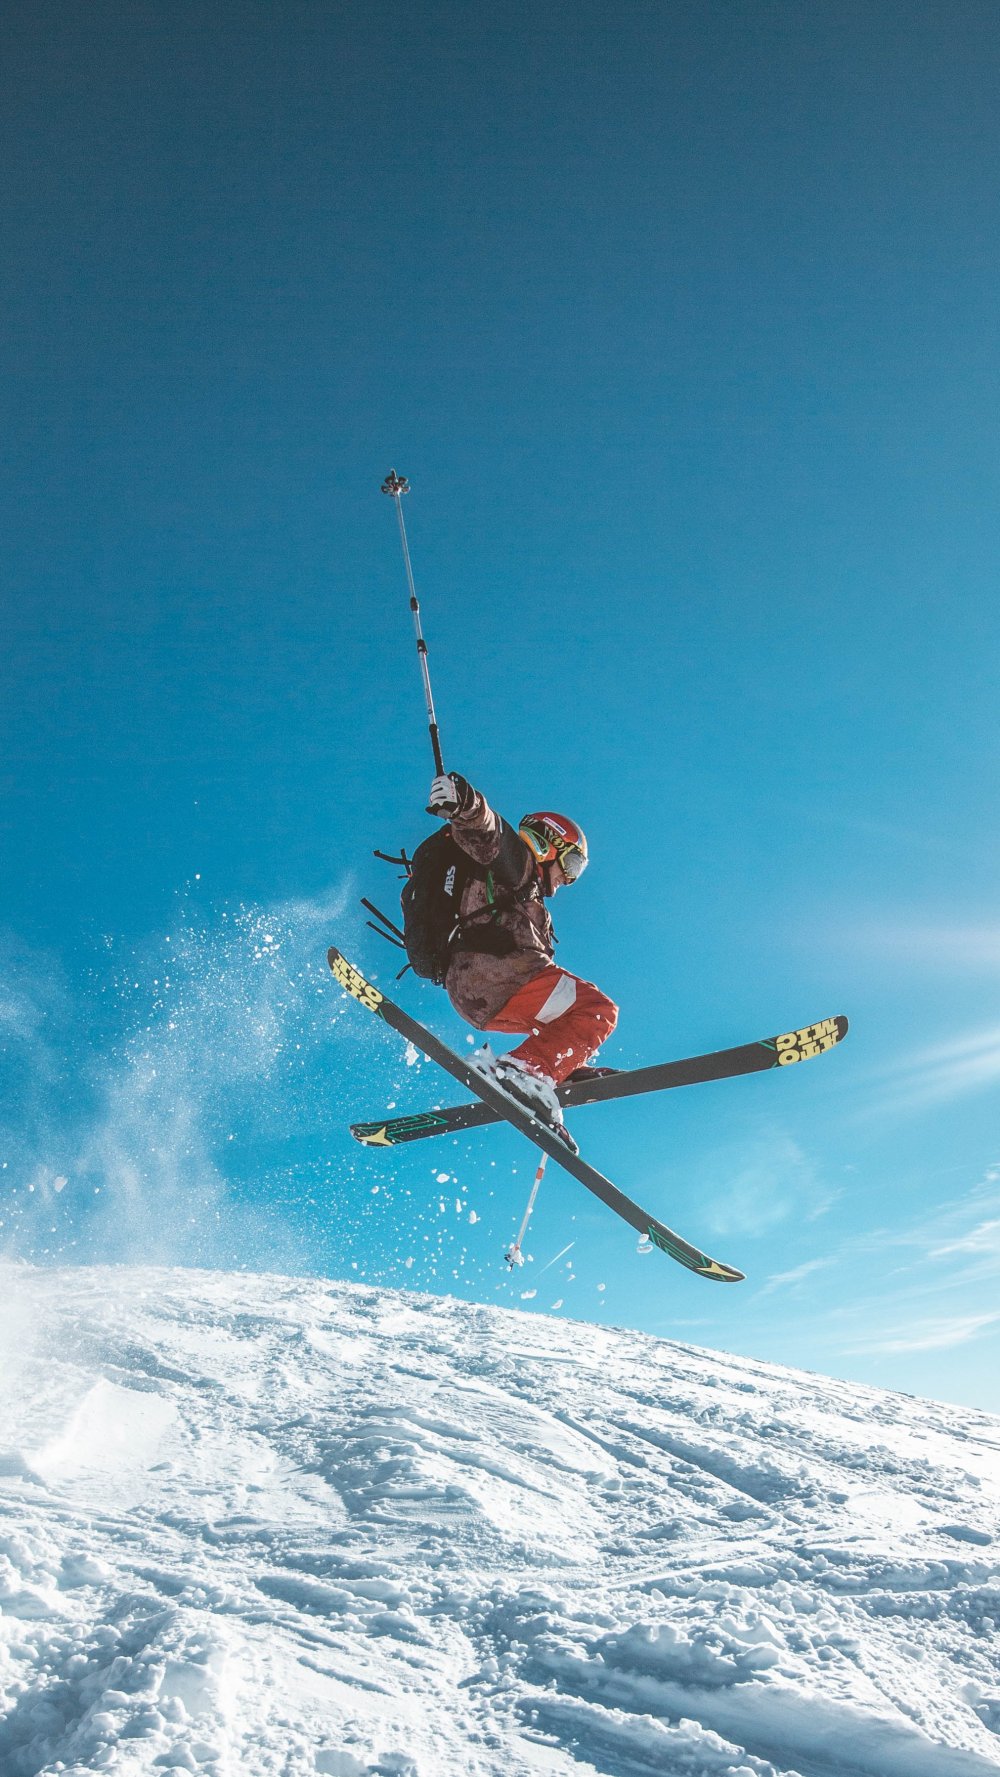 Hitta nya ski goggles i en skidshop med bra utbud